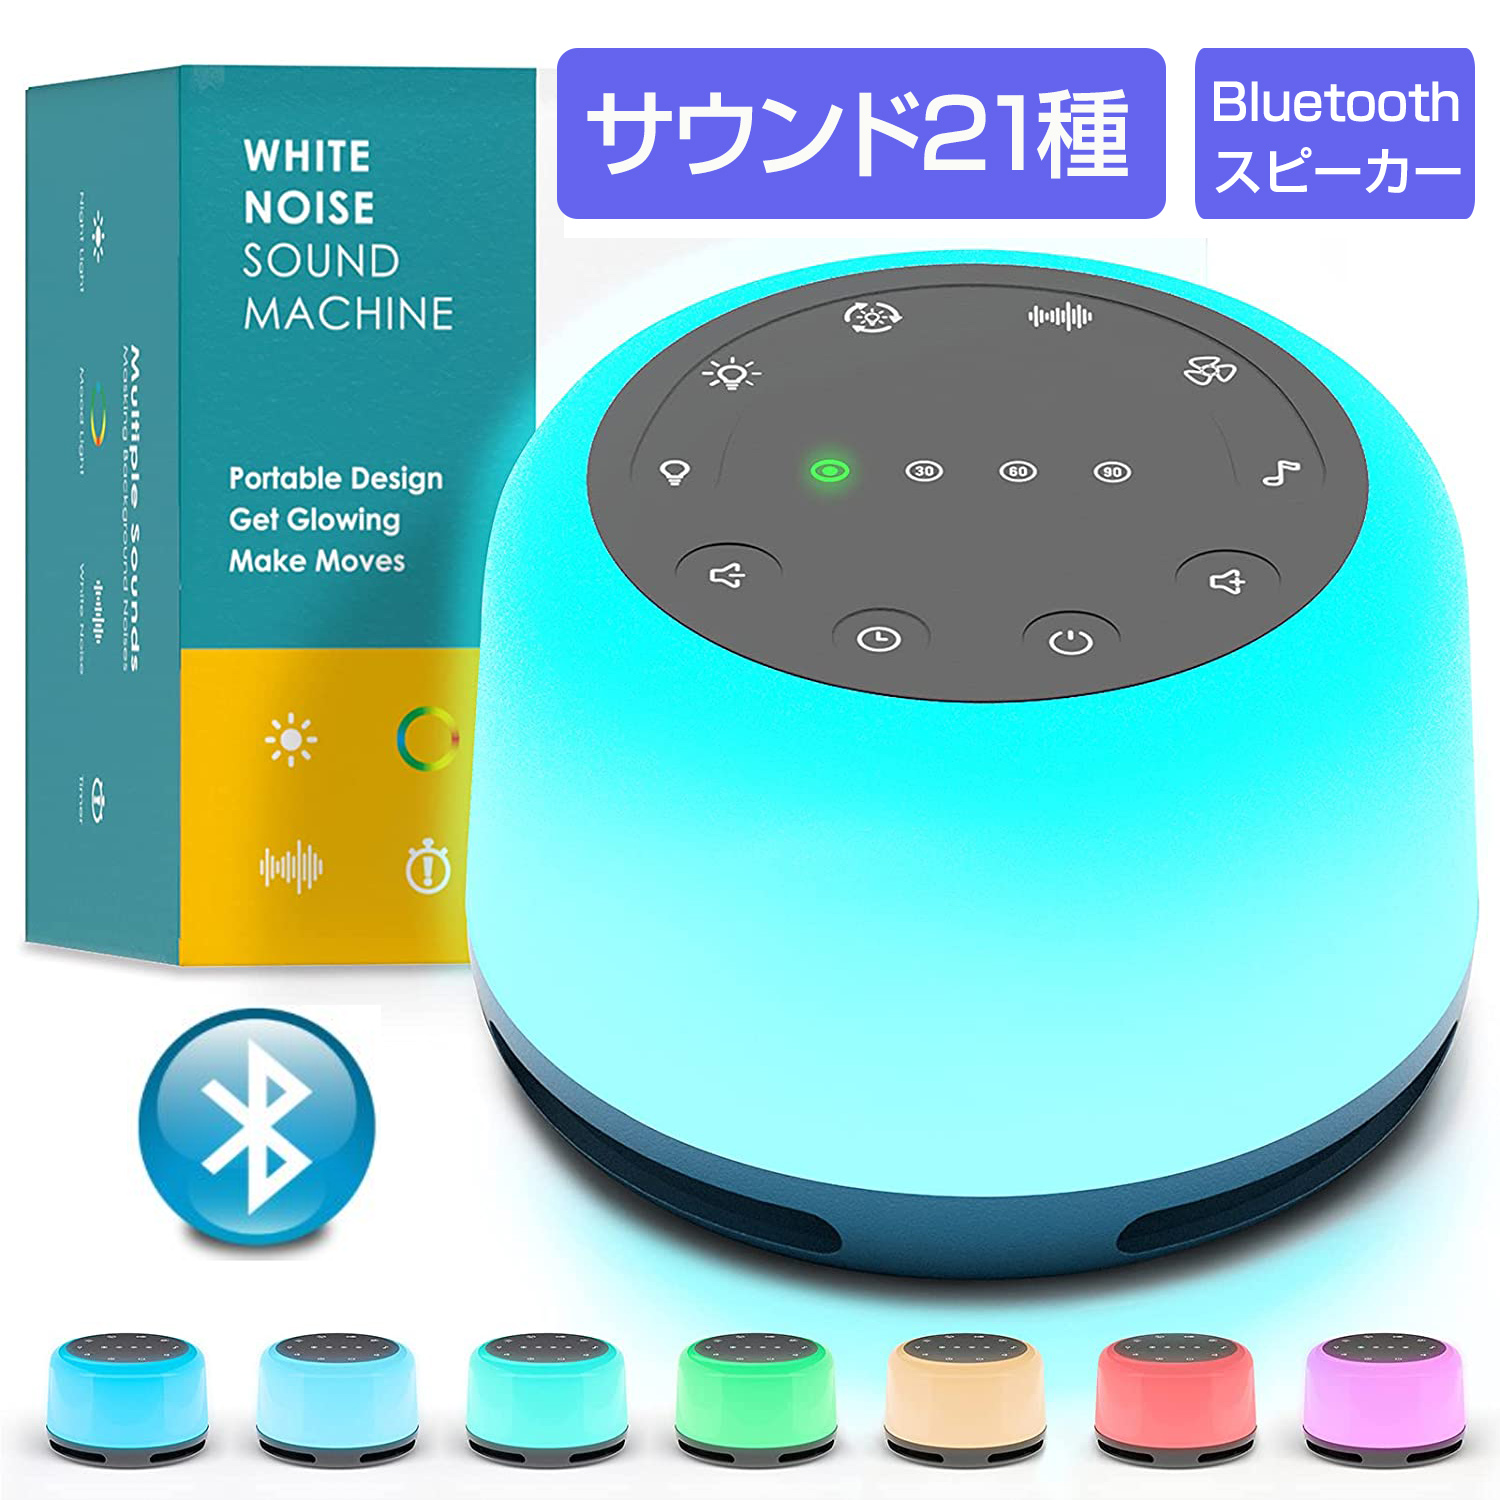 ホワイトノイズマシン 7種サウンド タイマー機能 Bluetoothスピーカー